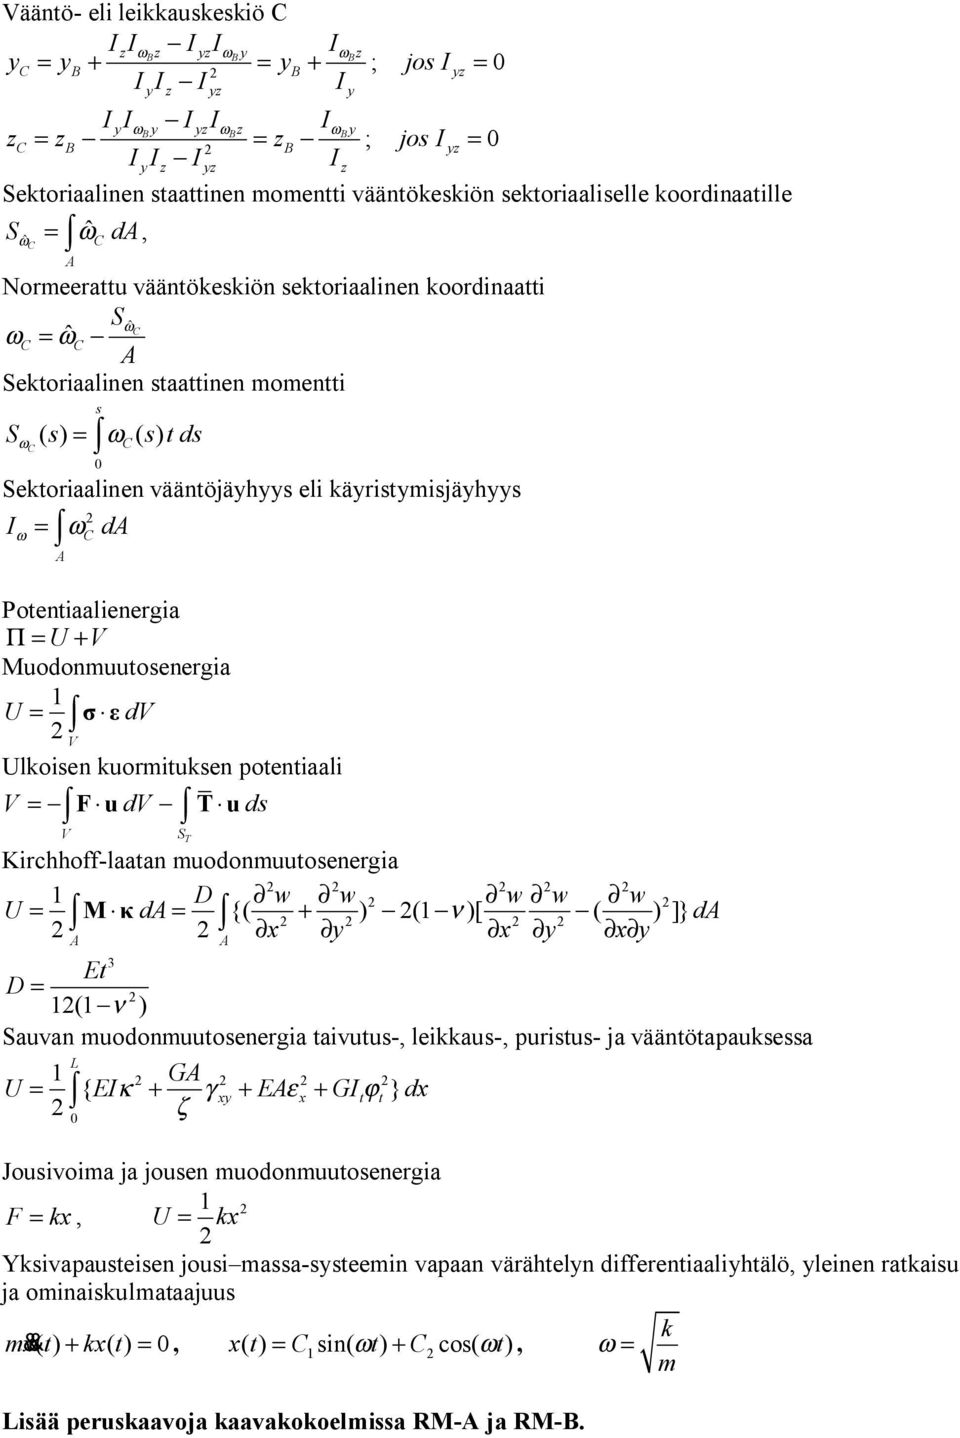 Krchhoff-laaan muodonmuuoenerga 1 D w w w w w U = d {( ) (1 ν)[ ( ) ]} d = + x x x E D = 1(1 ν ) Sauvan muodonmuuoenerga avuu-, lekkau-, puru- ja väänöapaukea 1 G { x x } κ γ ε ϕ ζ U = EI + + E + GI